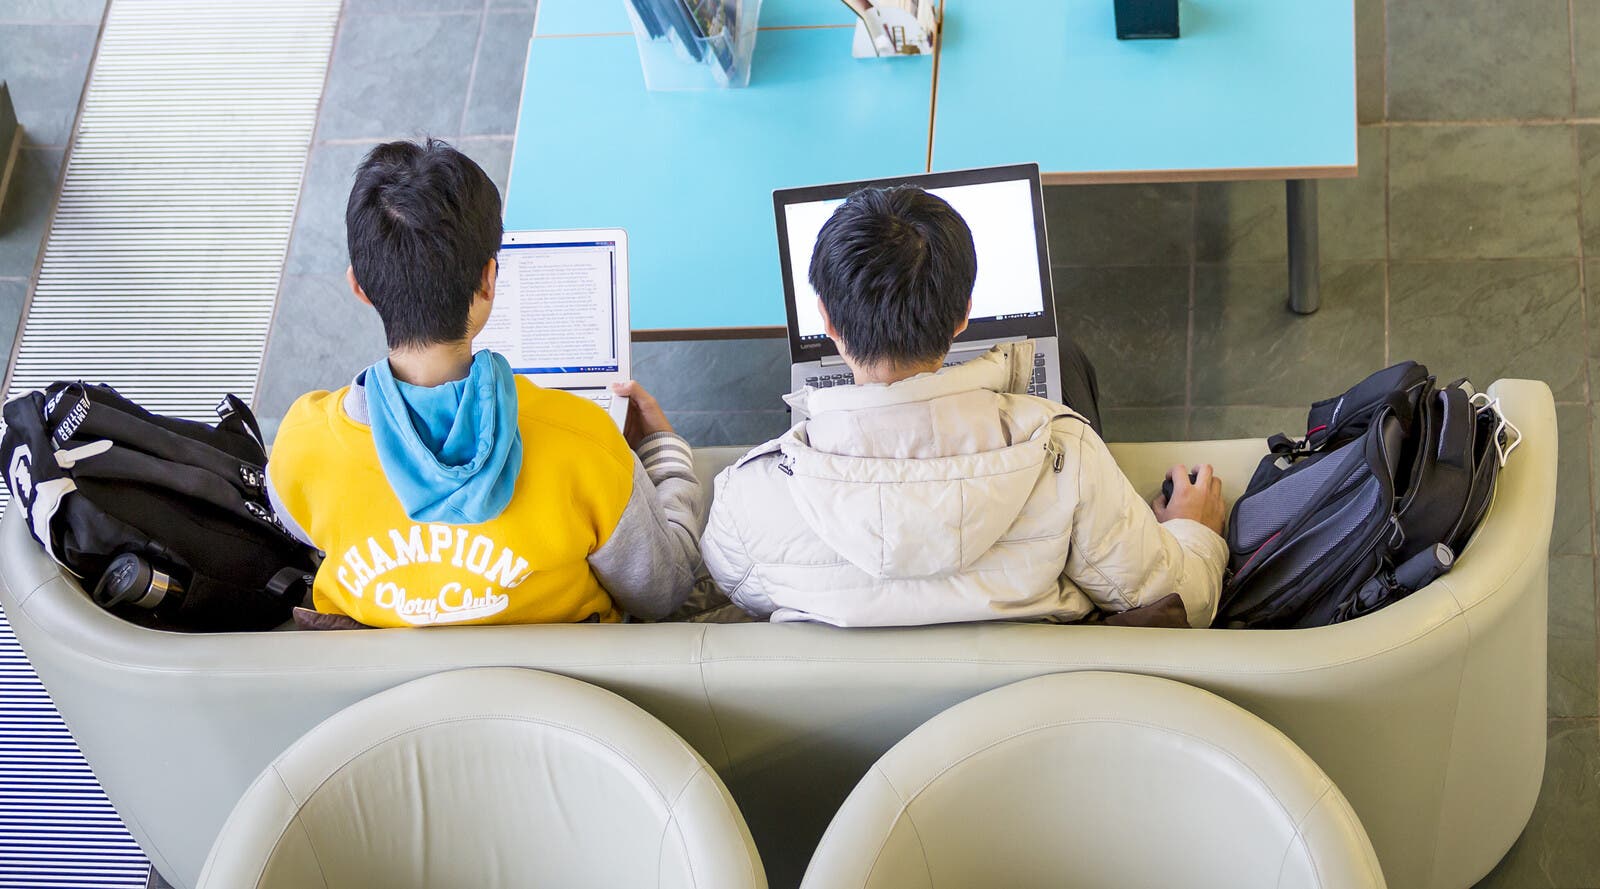 坐在沙发上使用笔记本电脑的学生